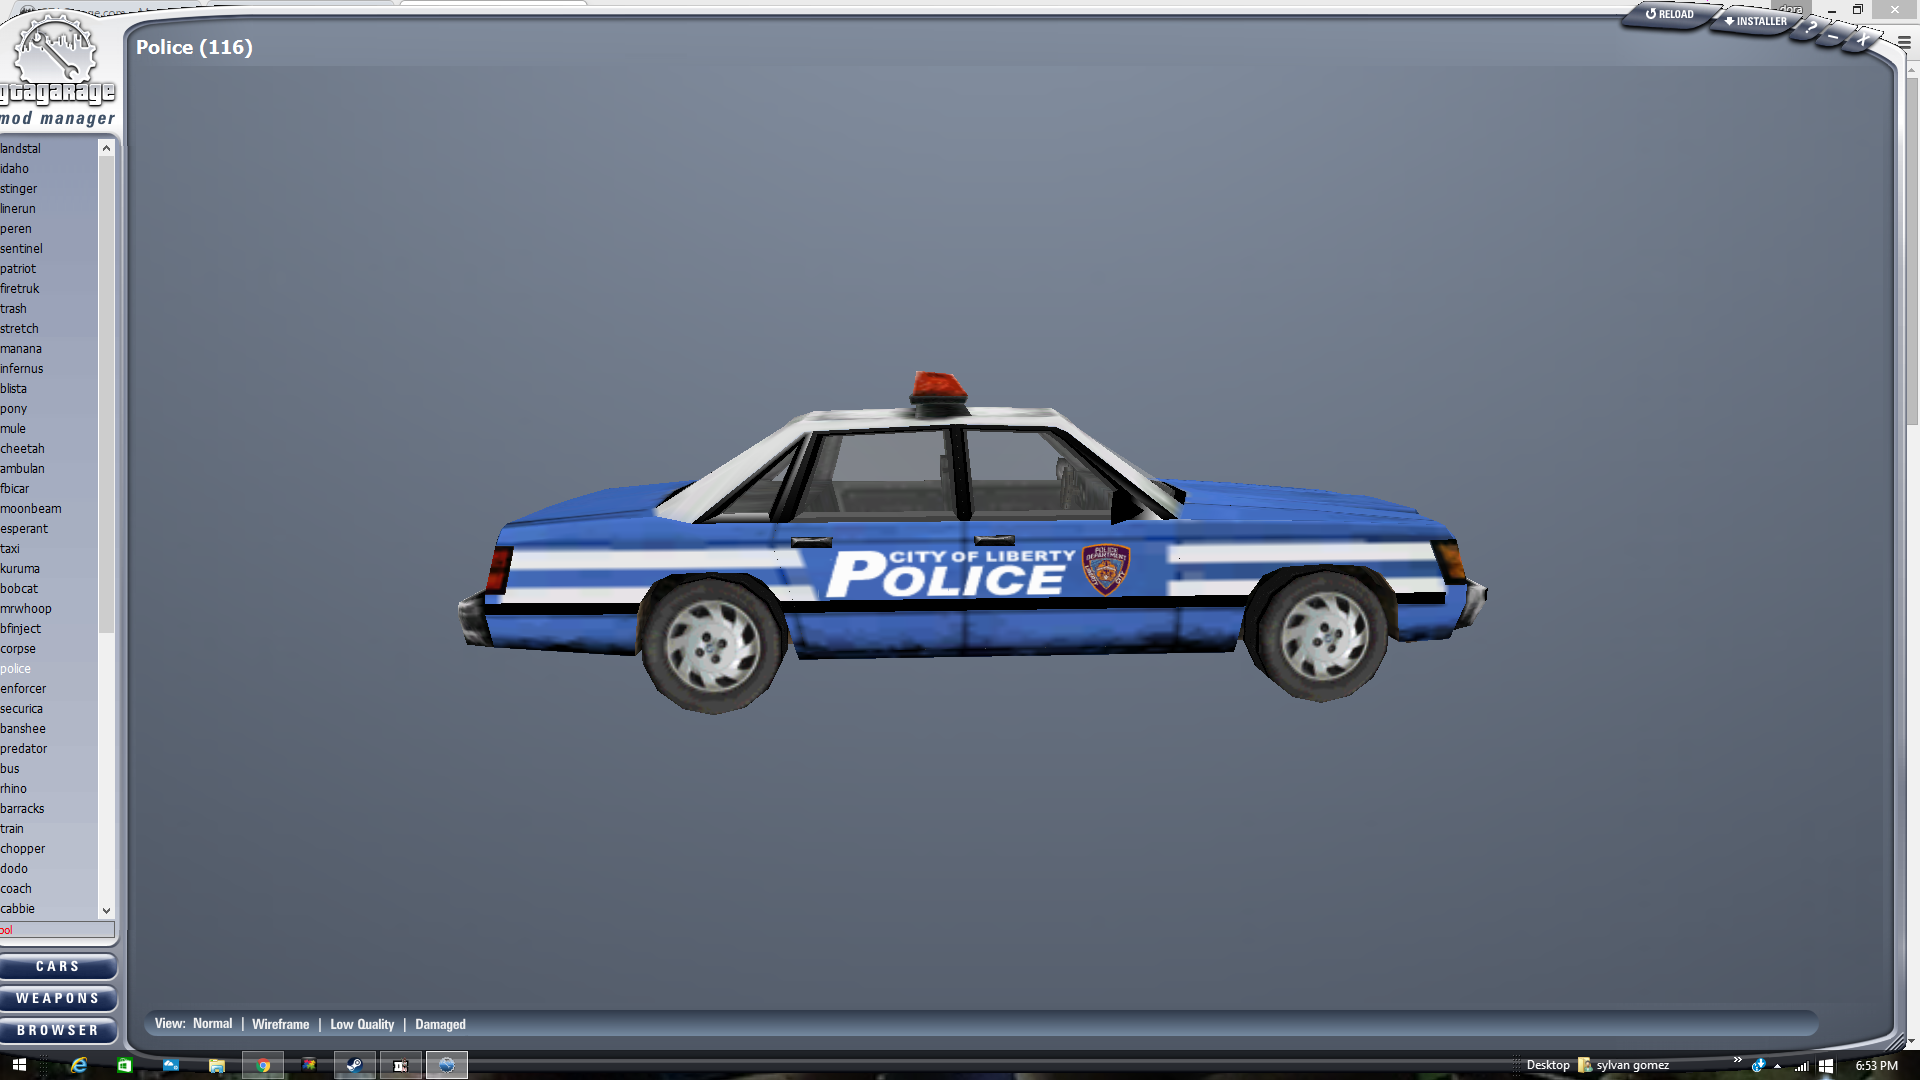 Blue Police Car Png - V7Rpebb.jpg Xpgtxnm.png, Transparent background PNG HD thumbnail